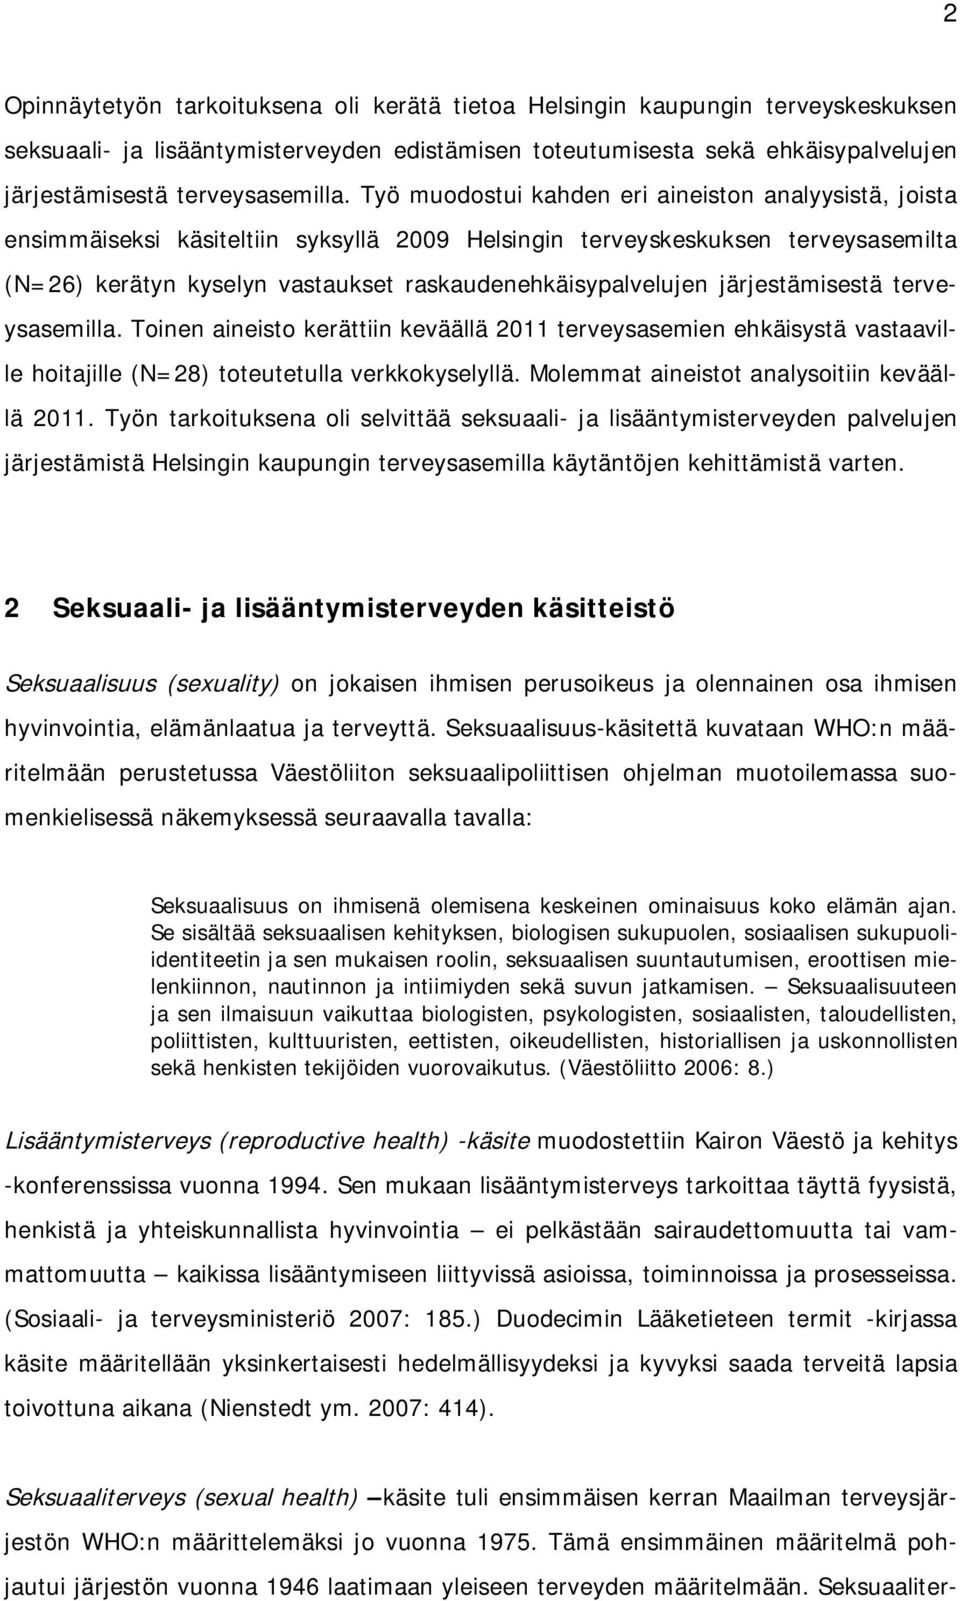 Työ muodostui kahden eri aineiston analyysistä, joista ensimmäiseksi käsiteltiin syksyllä 2009 Helsingin terveyskeskuksen terveysasemilta (N=26) kerätyn kyselyn vastaukset raskaudenehkäisypalvelujen